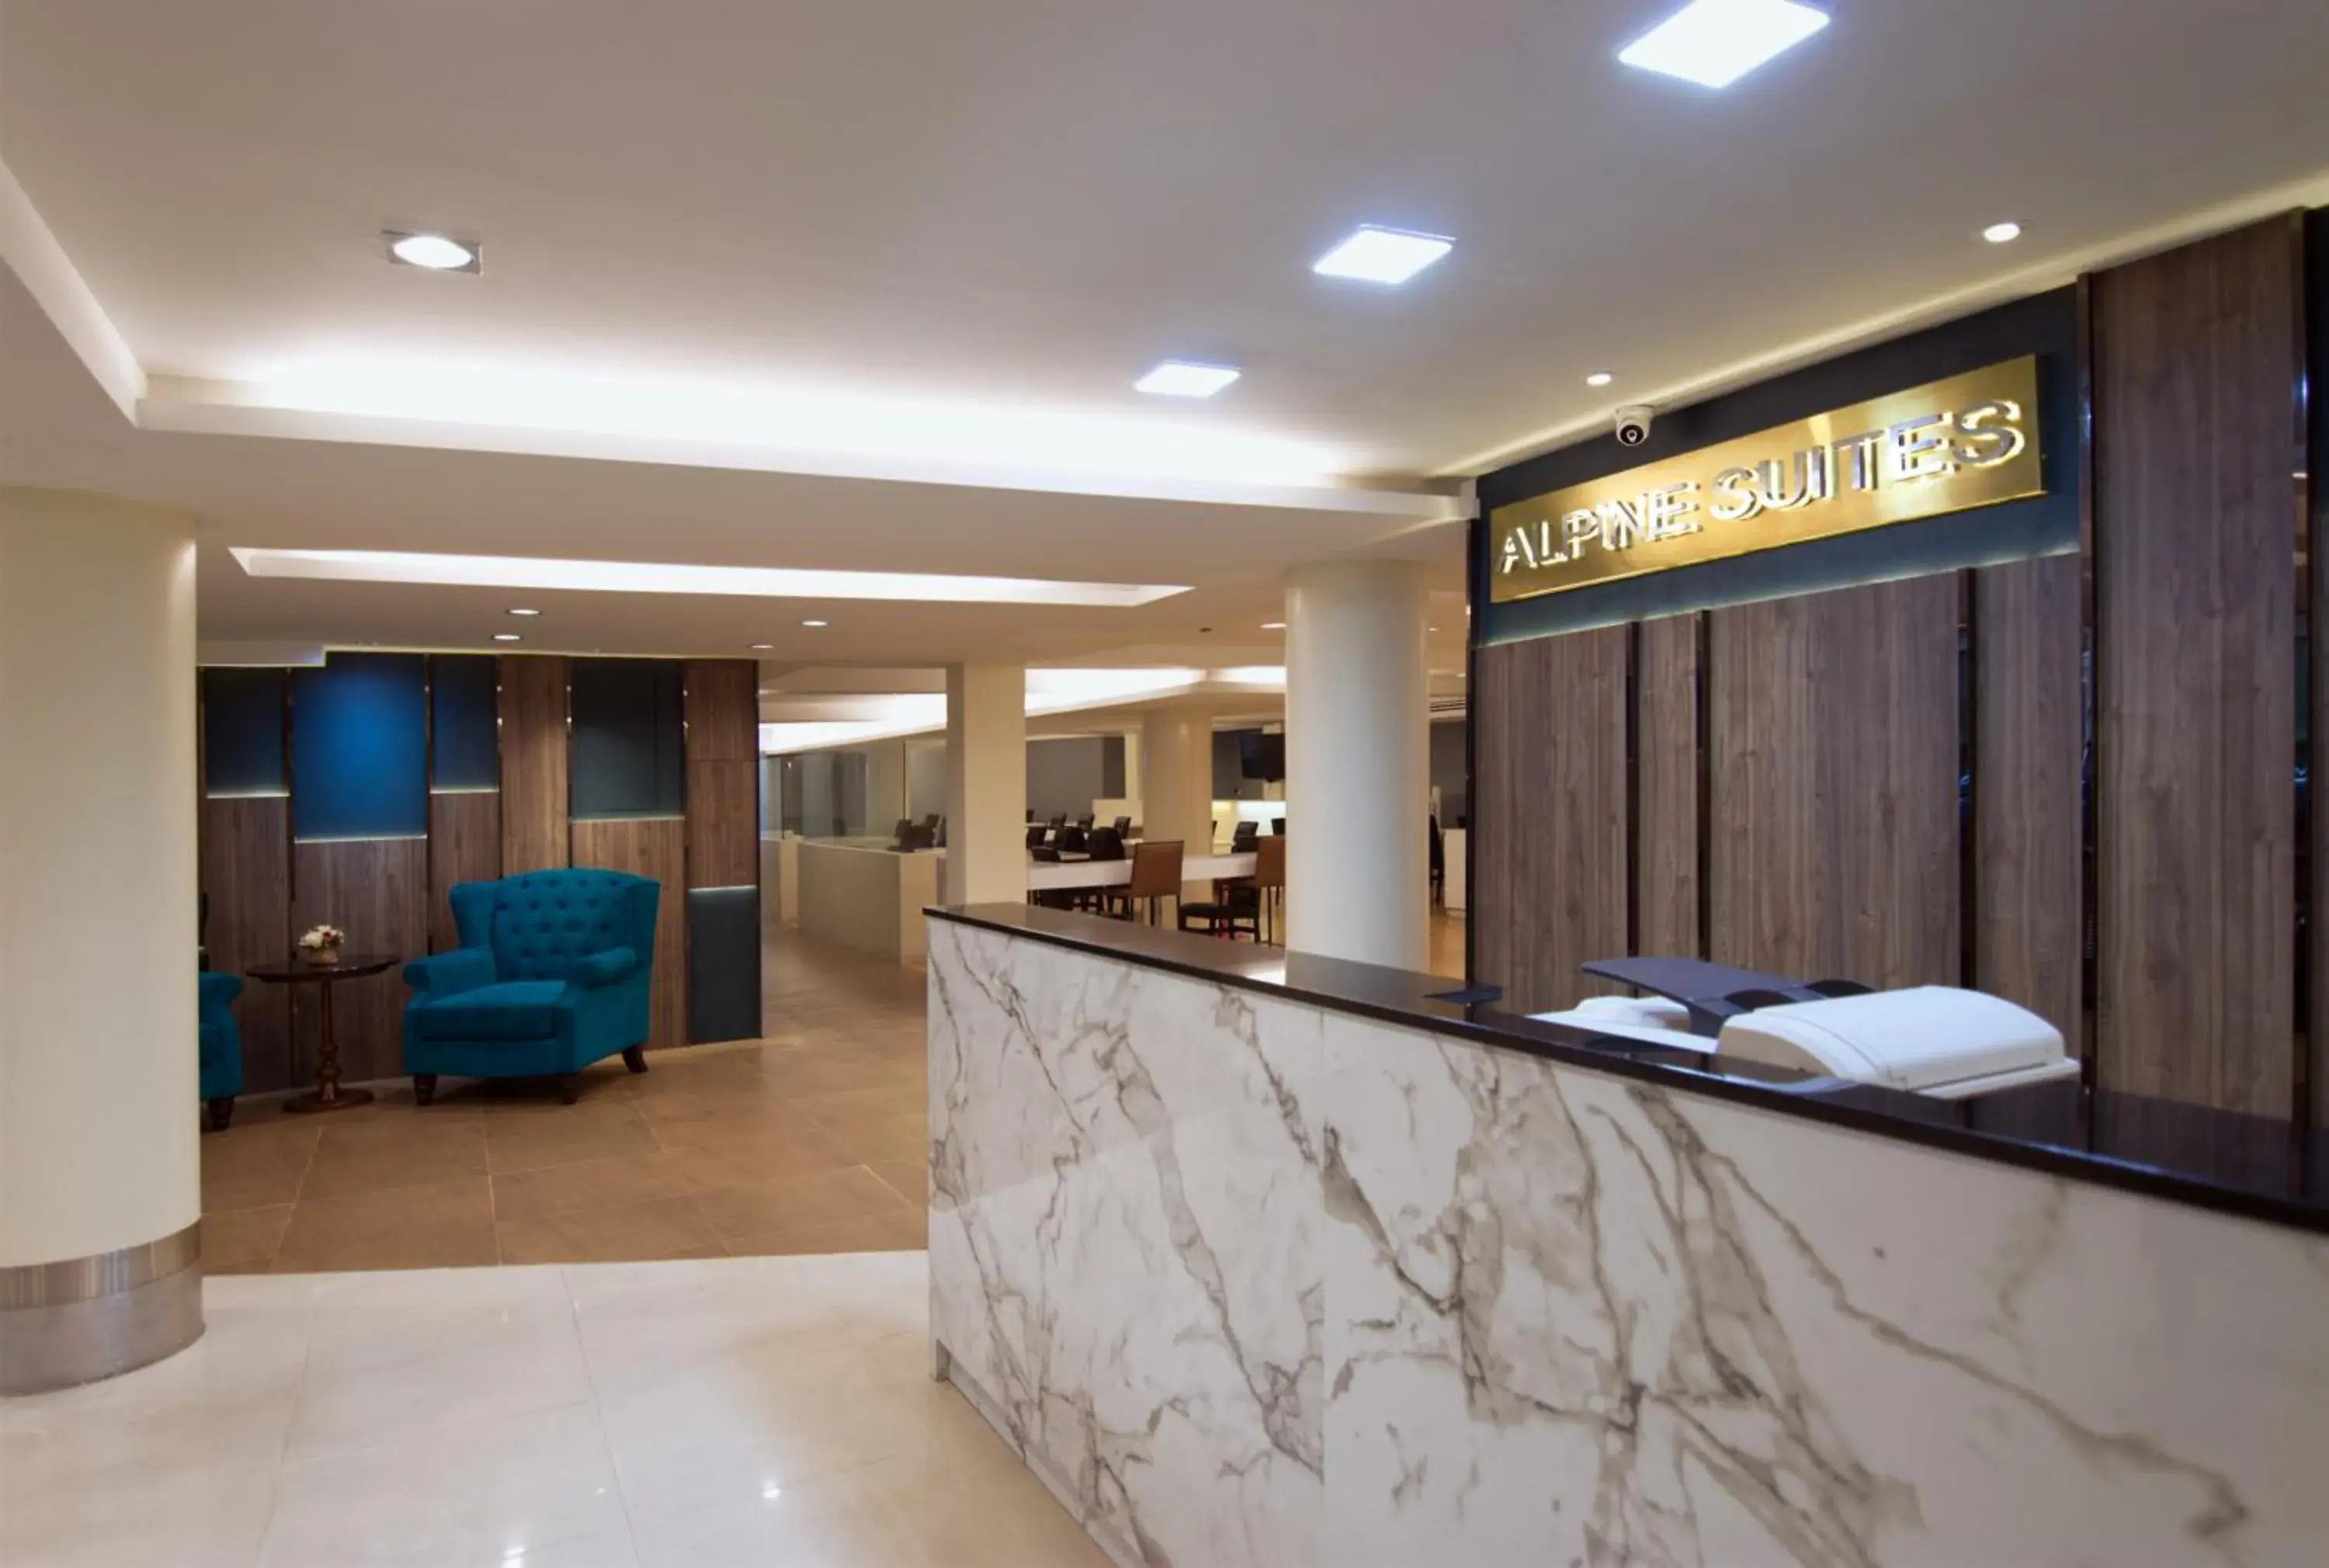 Lobby or reception, Lobby/Reception in Grand Alpine Hotel